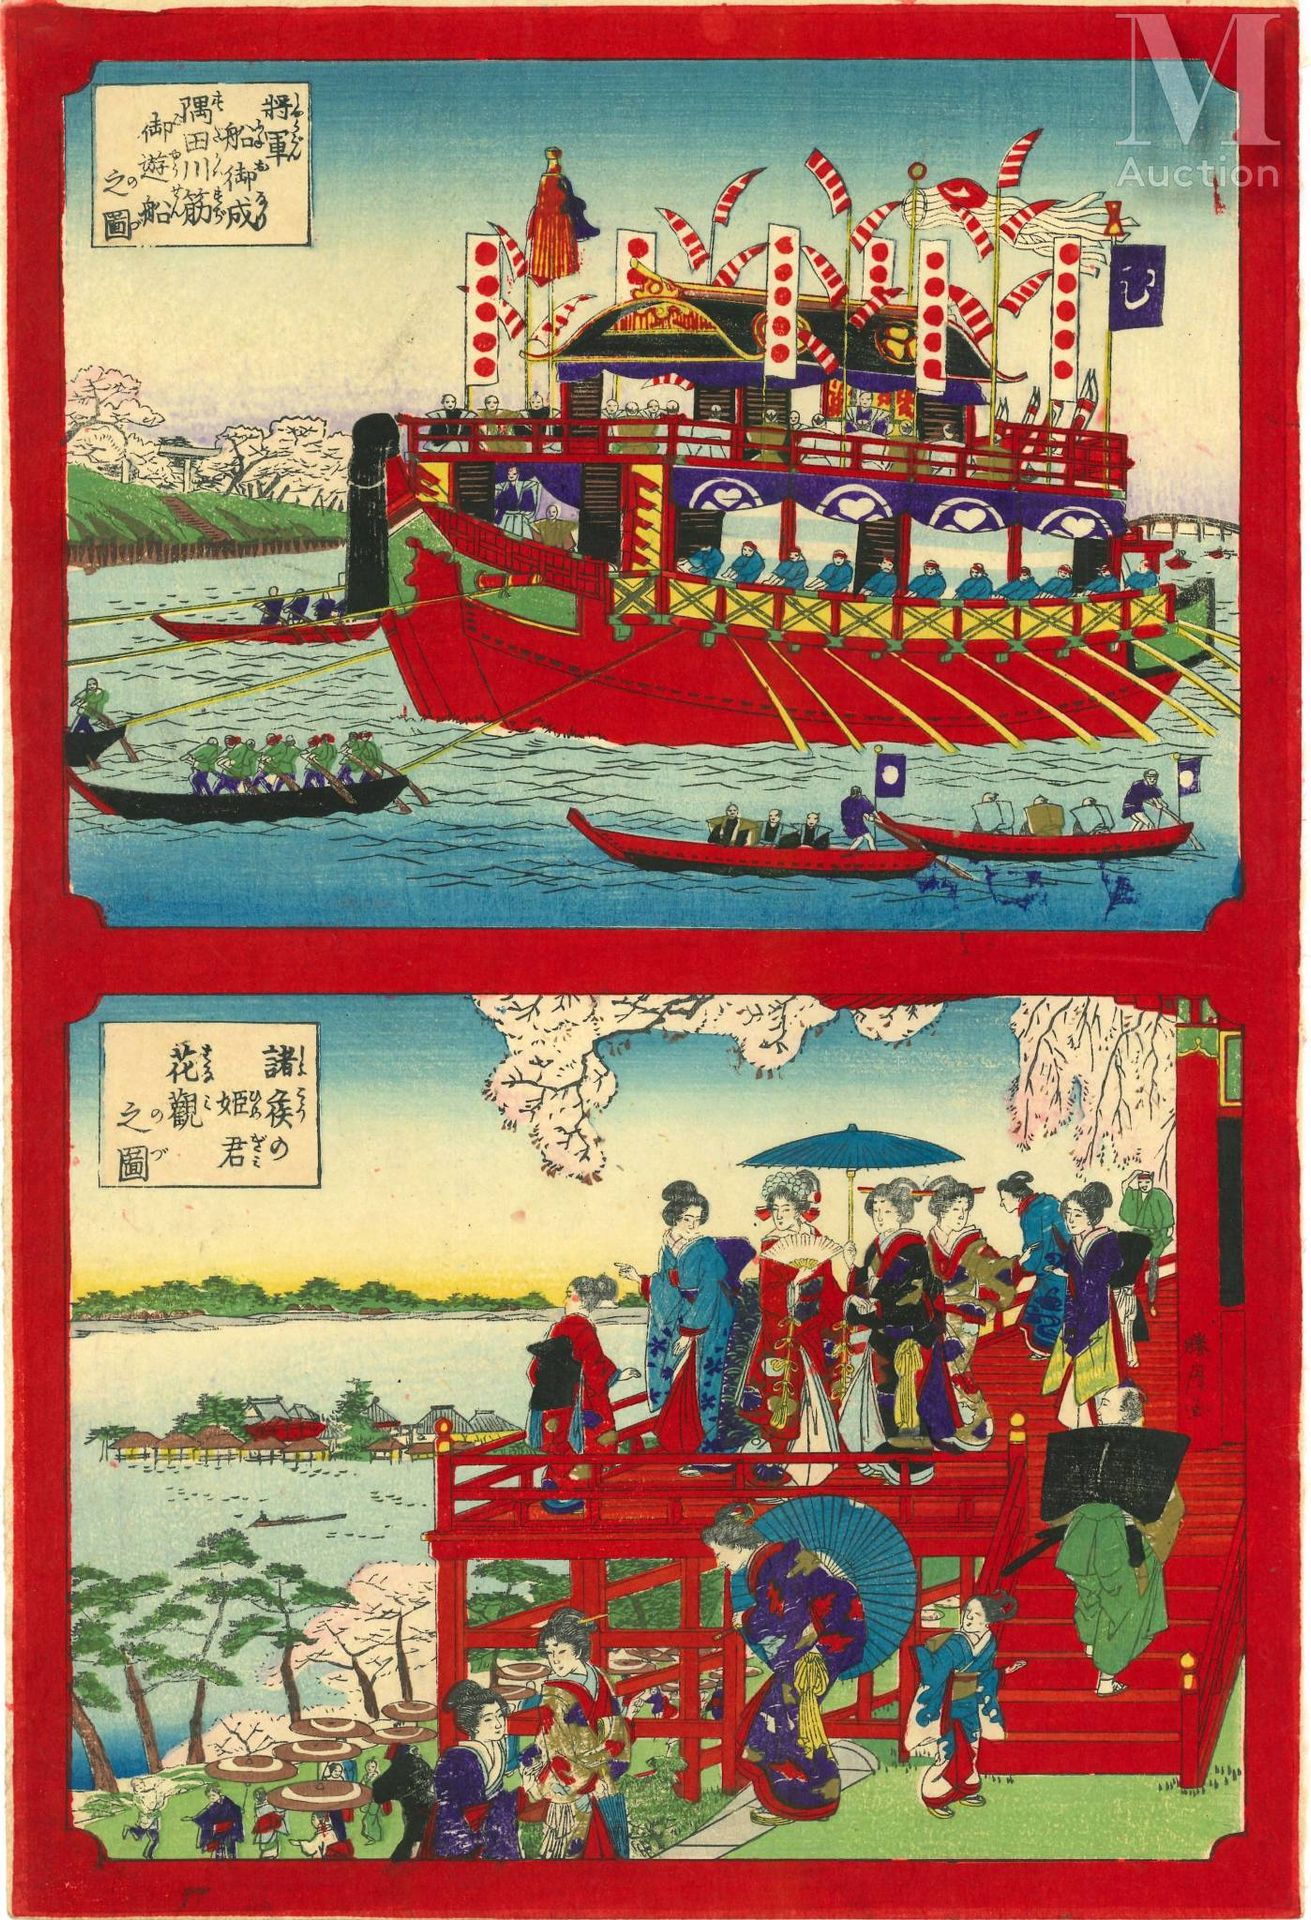 JAPON, XIXe siècle 印刷品

"德川氏 "的占领
西木绘，纸上水墨和色彩，由两个中段横幅形成的oban taté-é格式。
不明身份的艺术家。